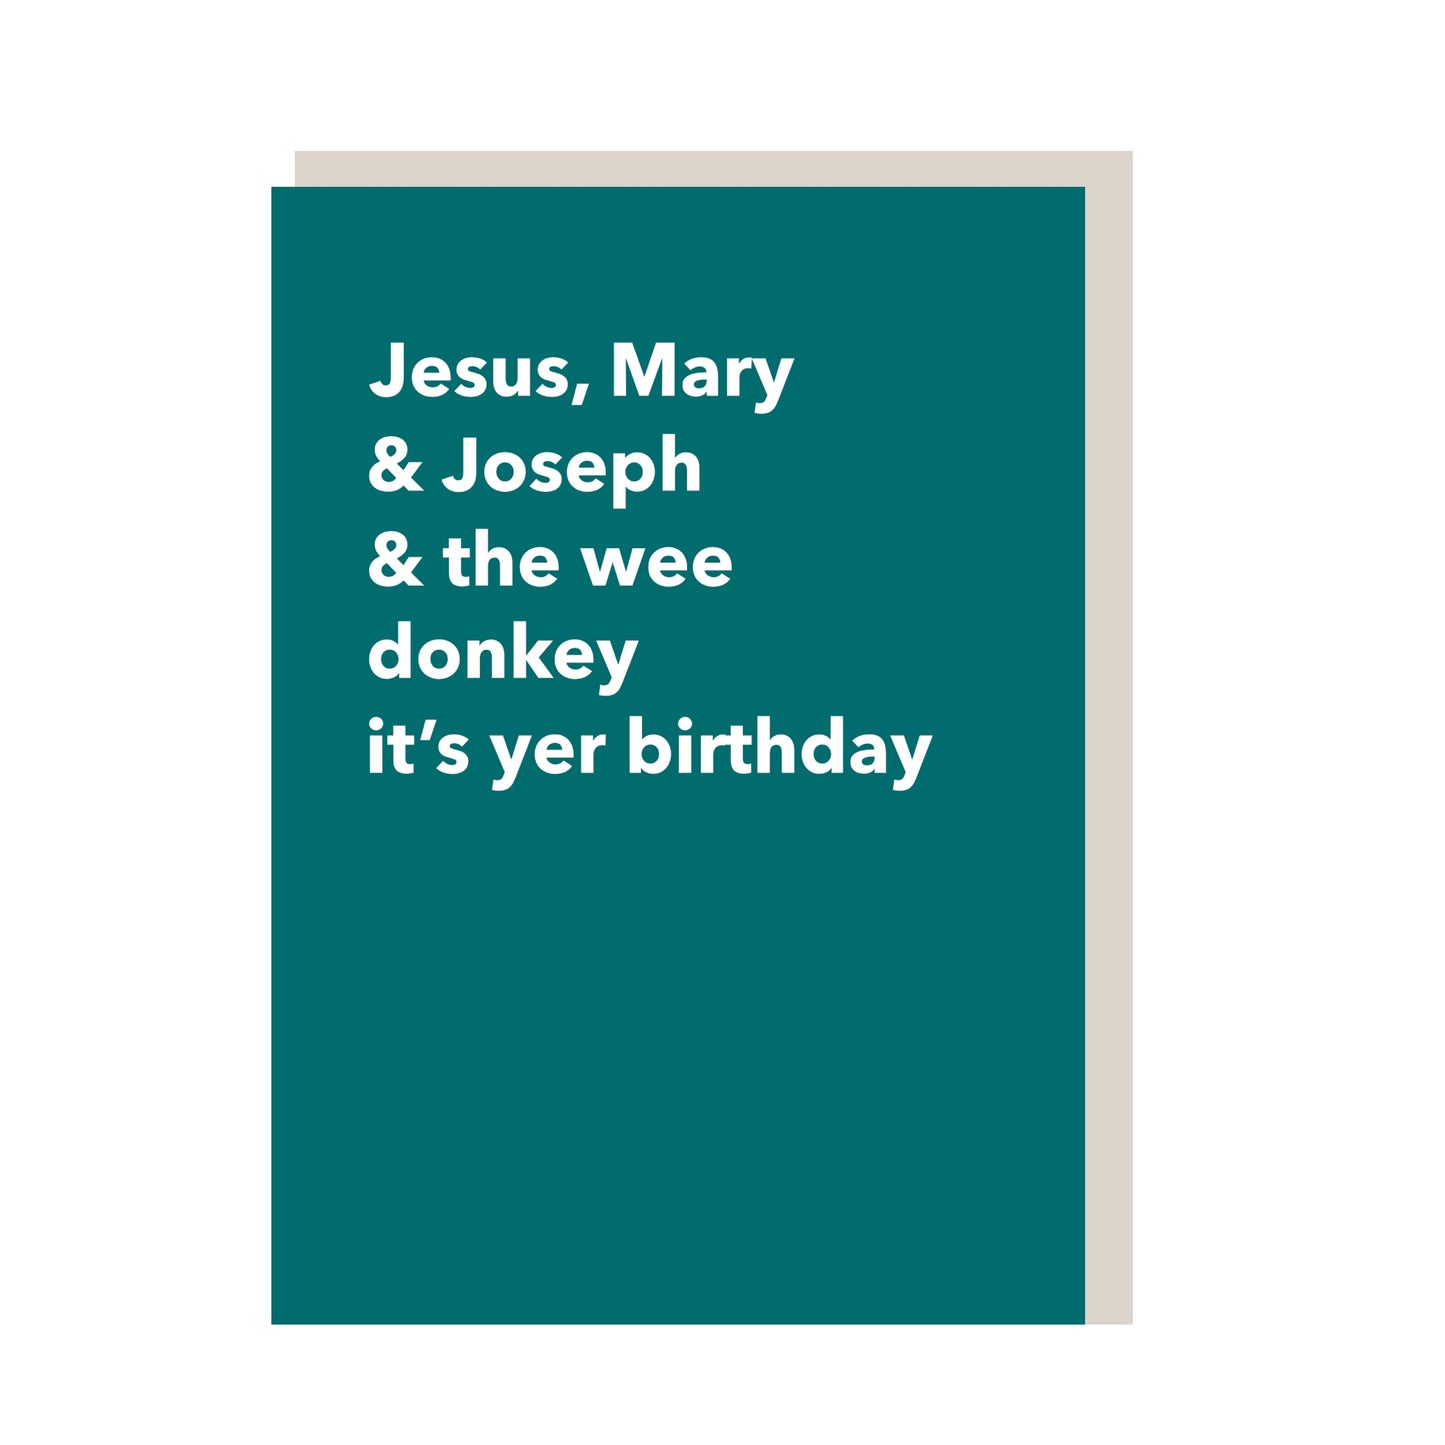 Jesus, Mary & Joseph…